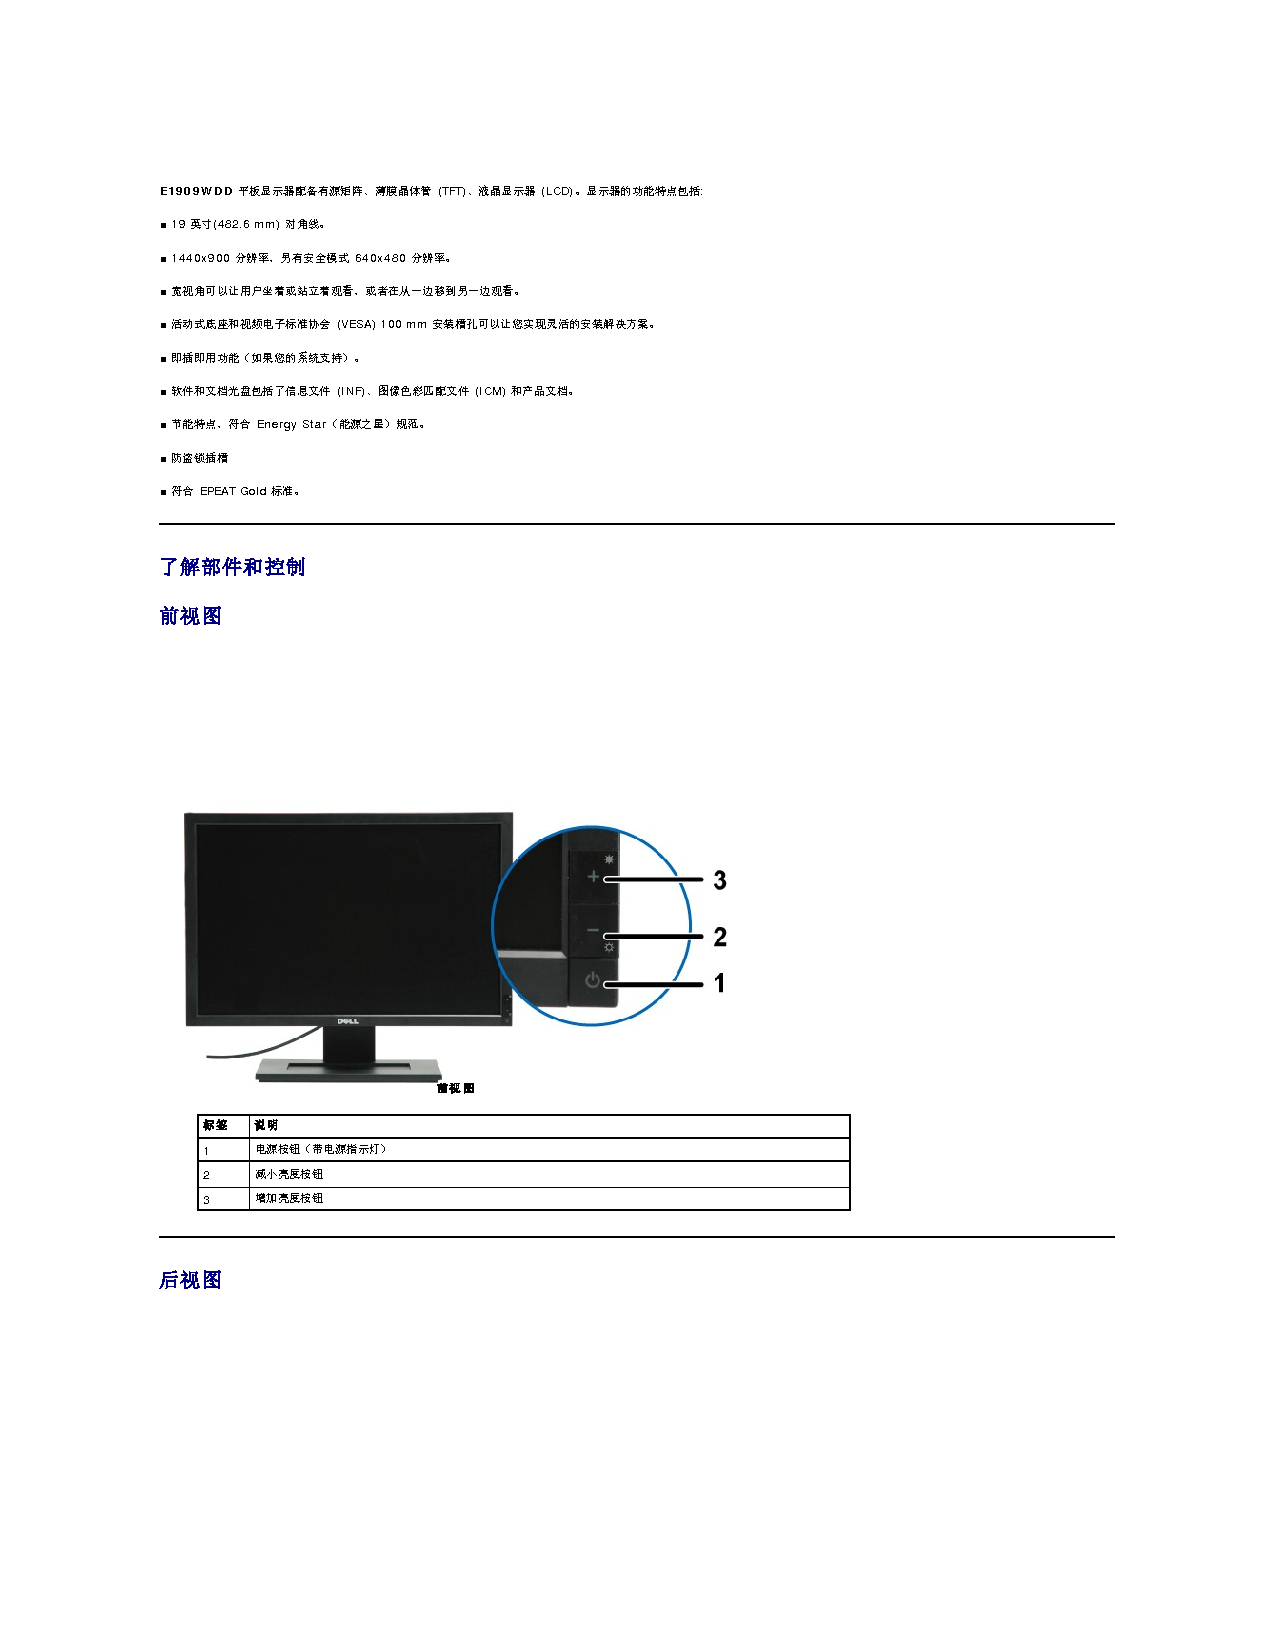 戴尔 Dell E1909WDD 用户指南 第2页